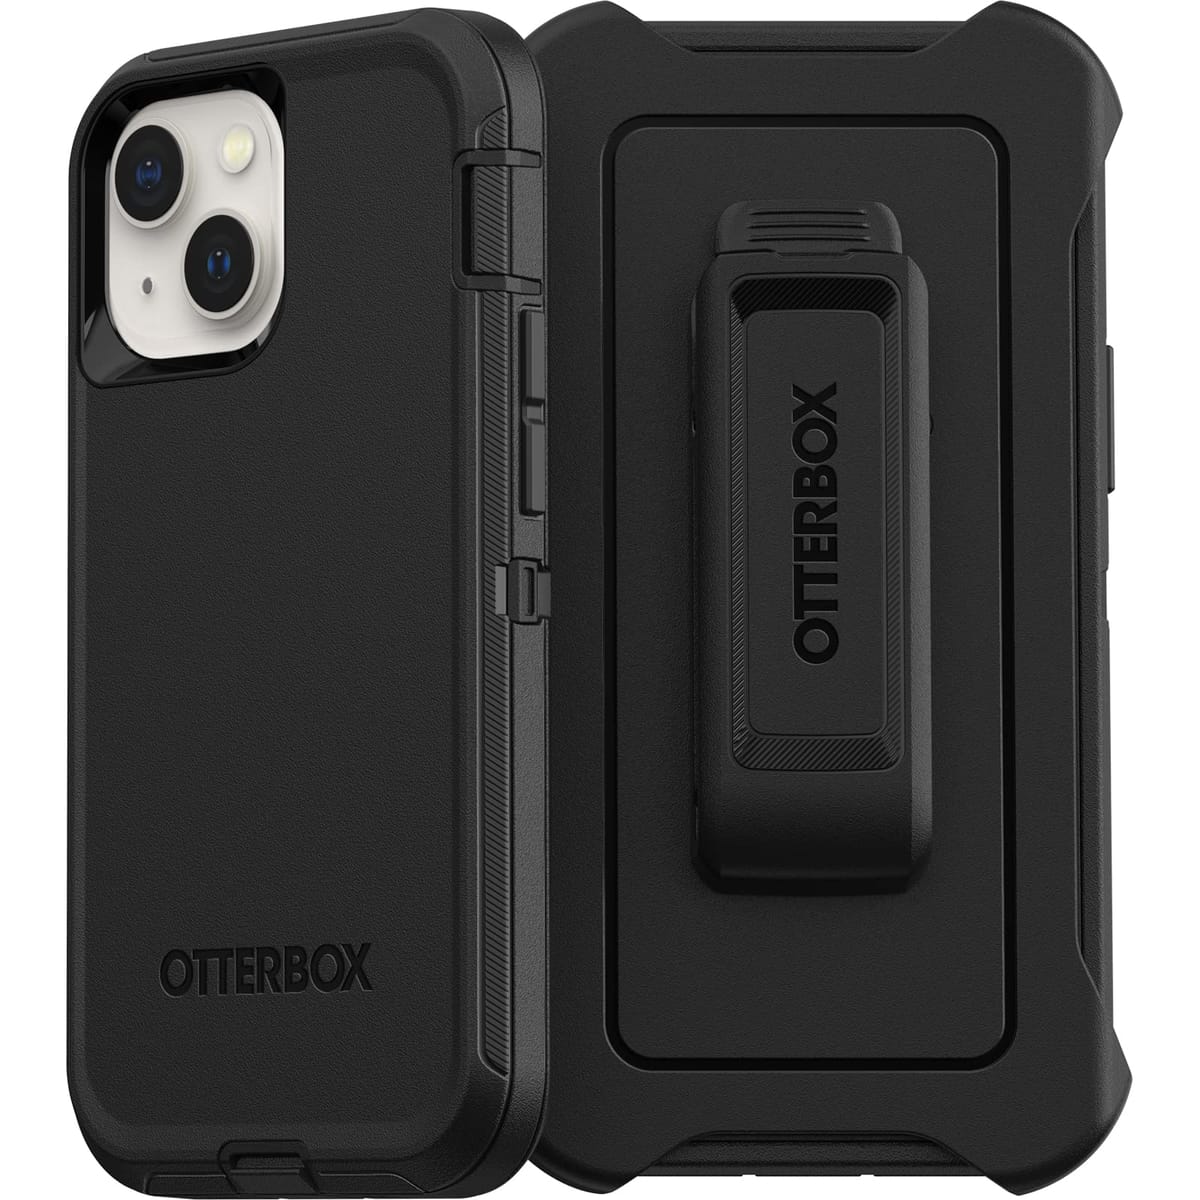 OtterBox iPhone 13 mini & iPhone 12 mini ディフェンダーシリーズケース - ブラック 頑丈 丈夫 ポート保護 ホルスタークリップキックスタンド付き